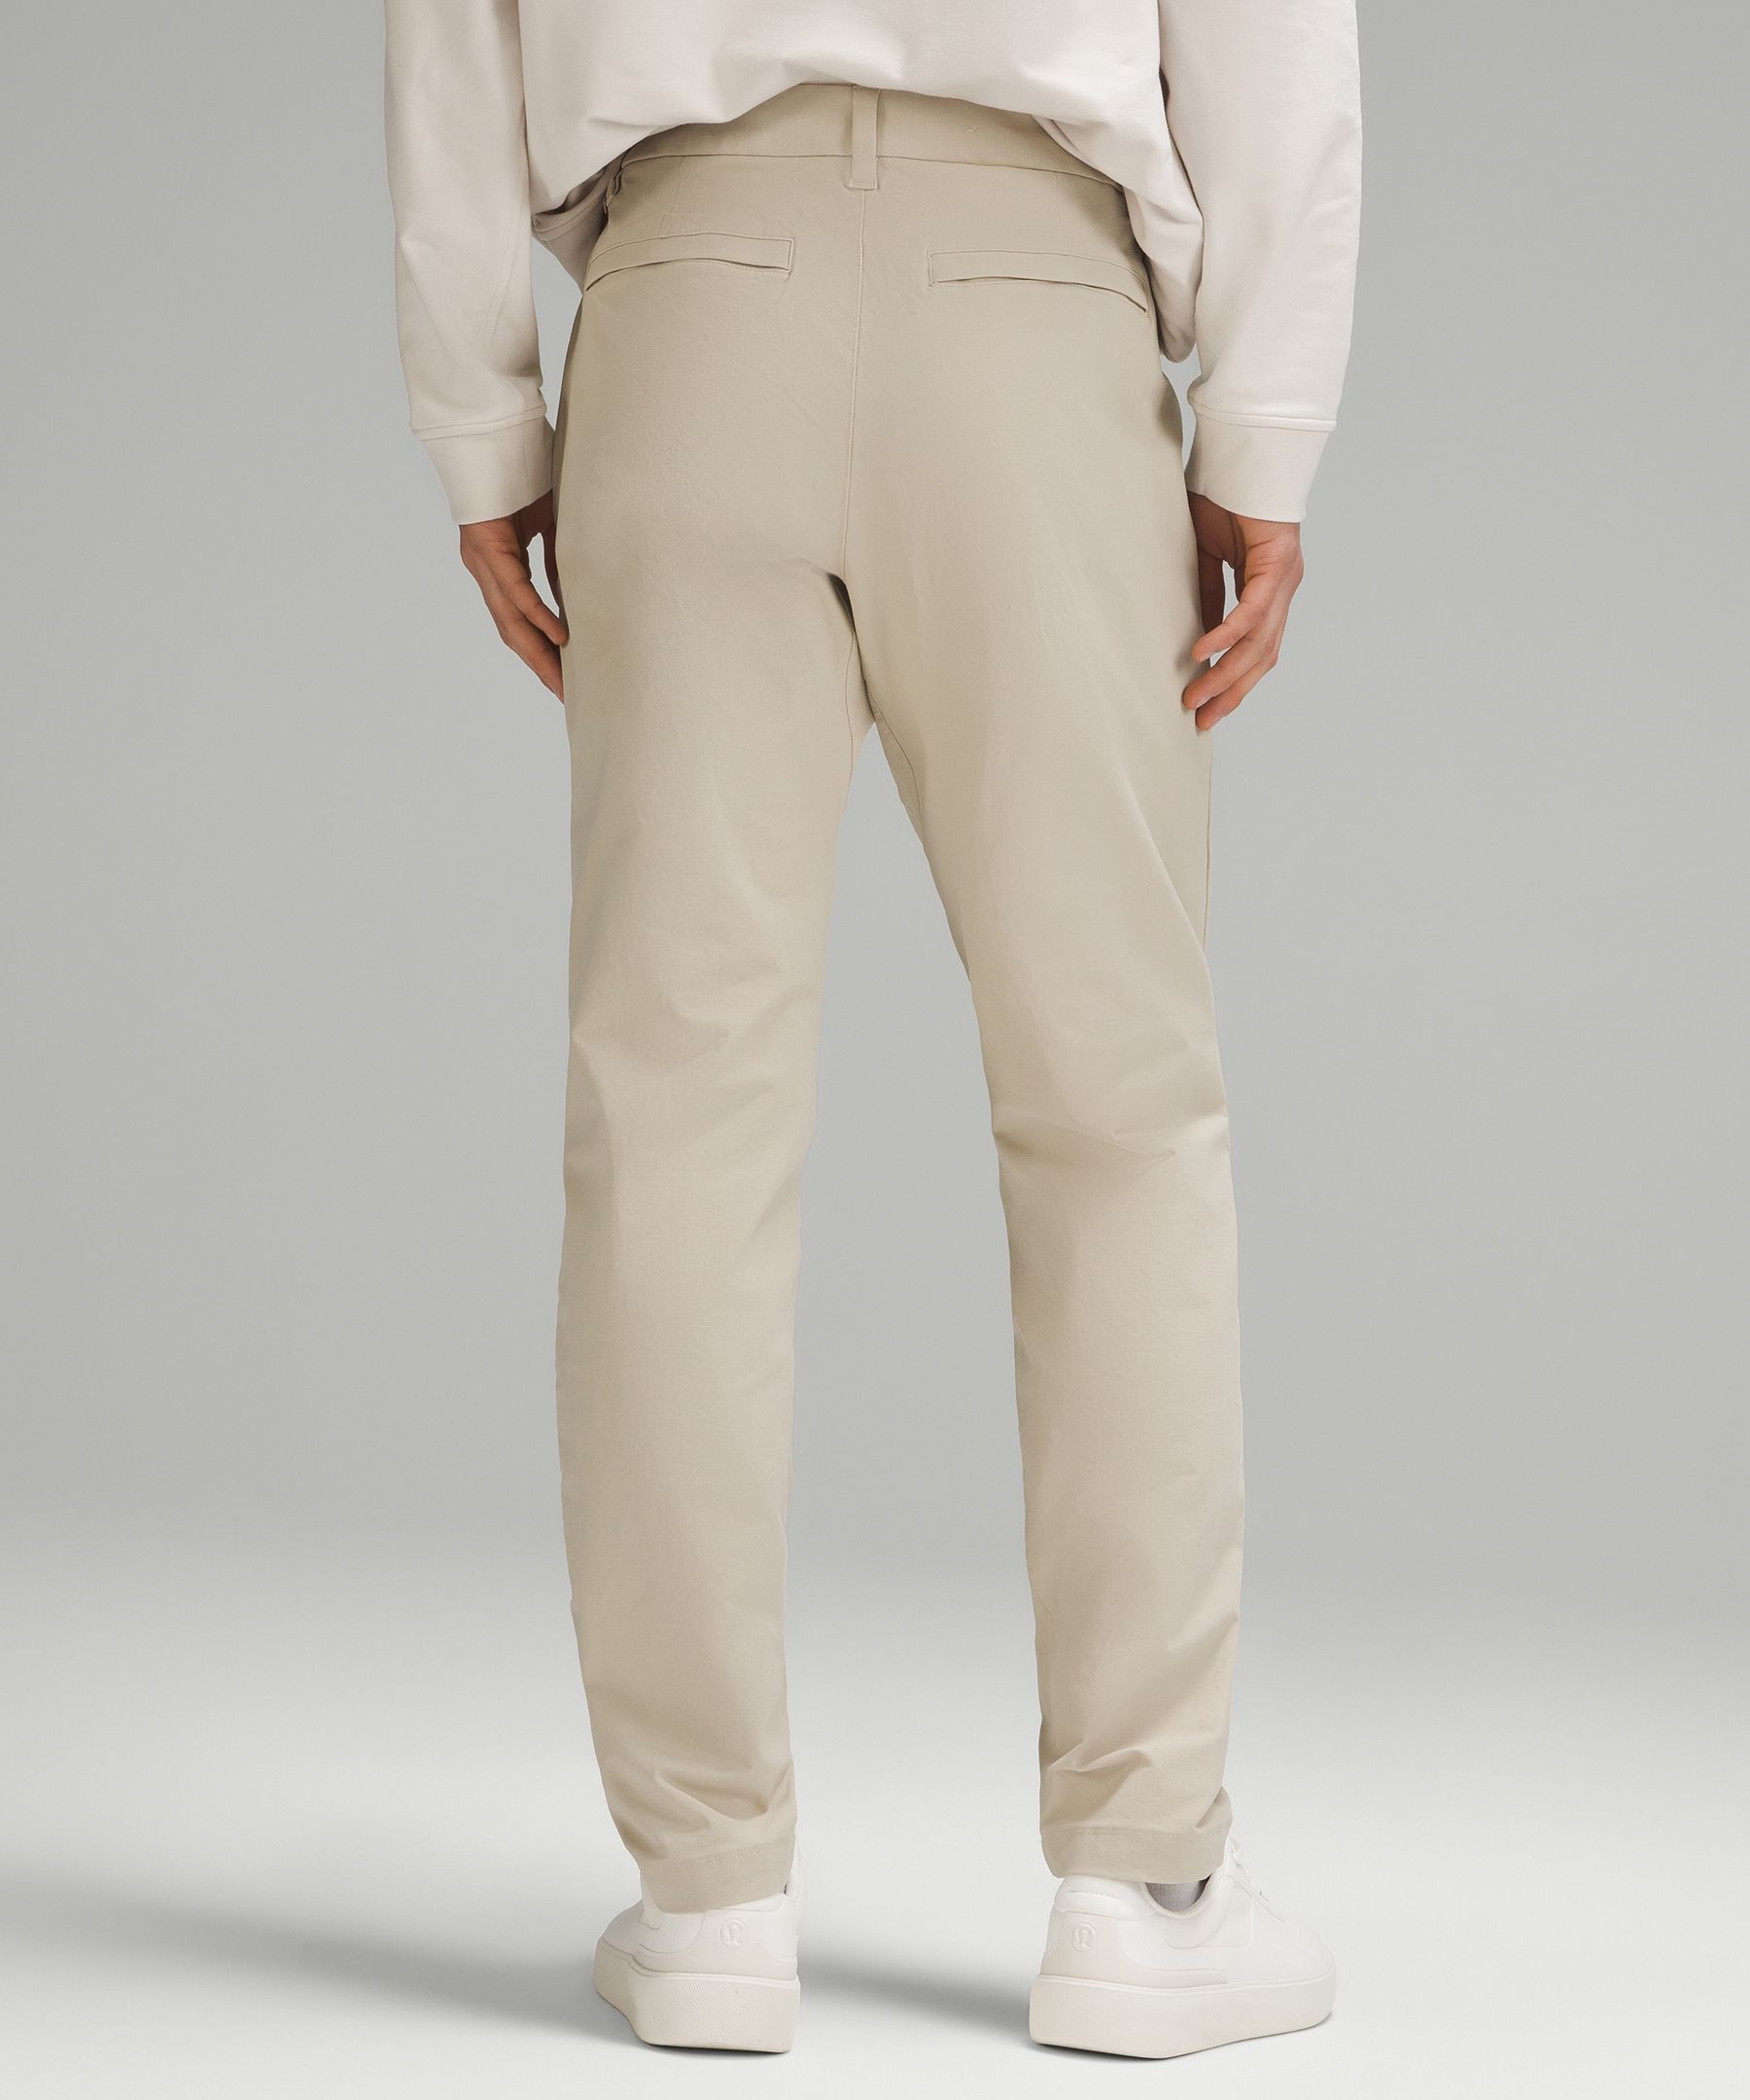 Shop Lululemon Abc Slim-fit Trousers 32"l Stretch Cotton Versatwill